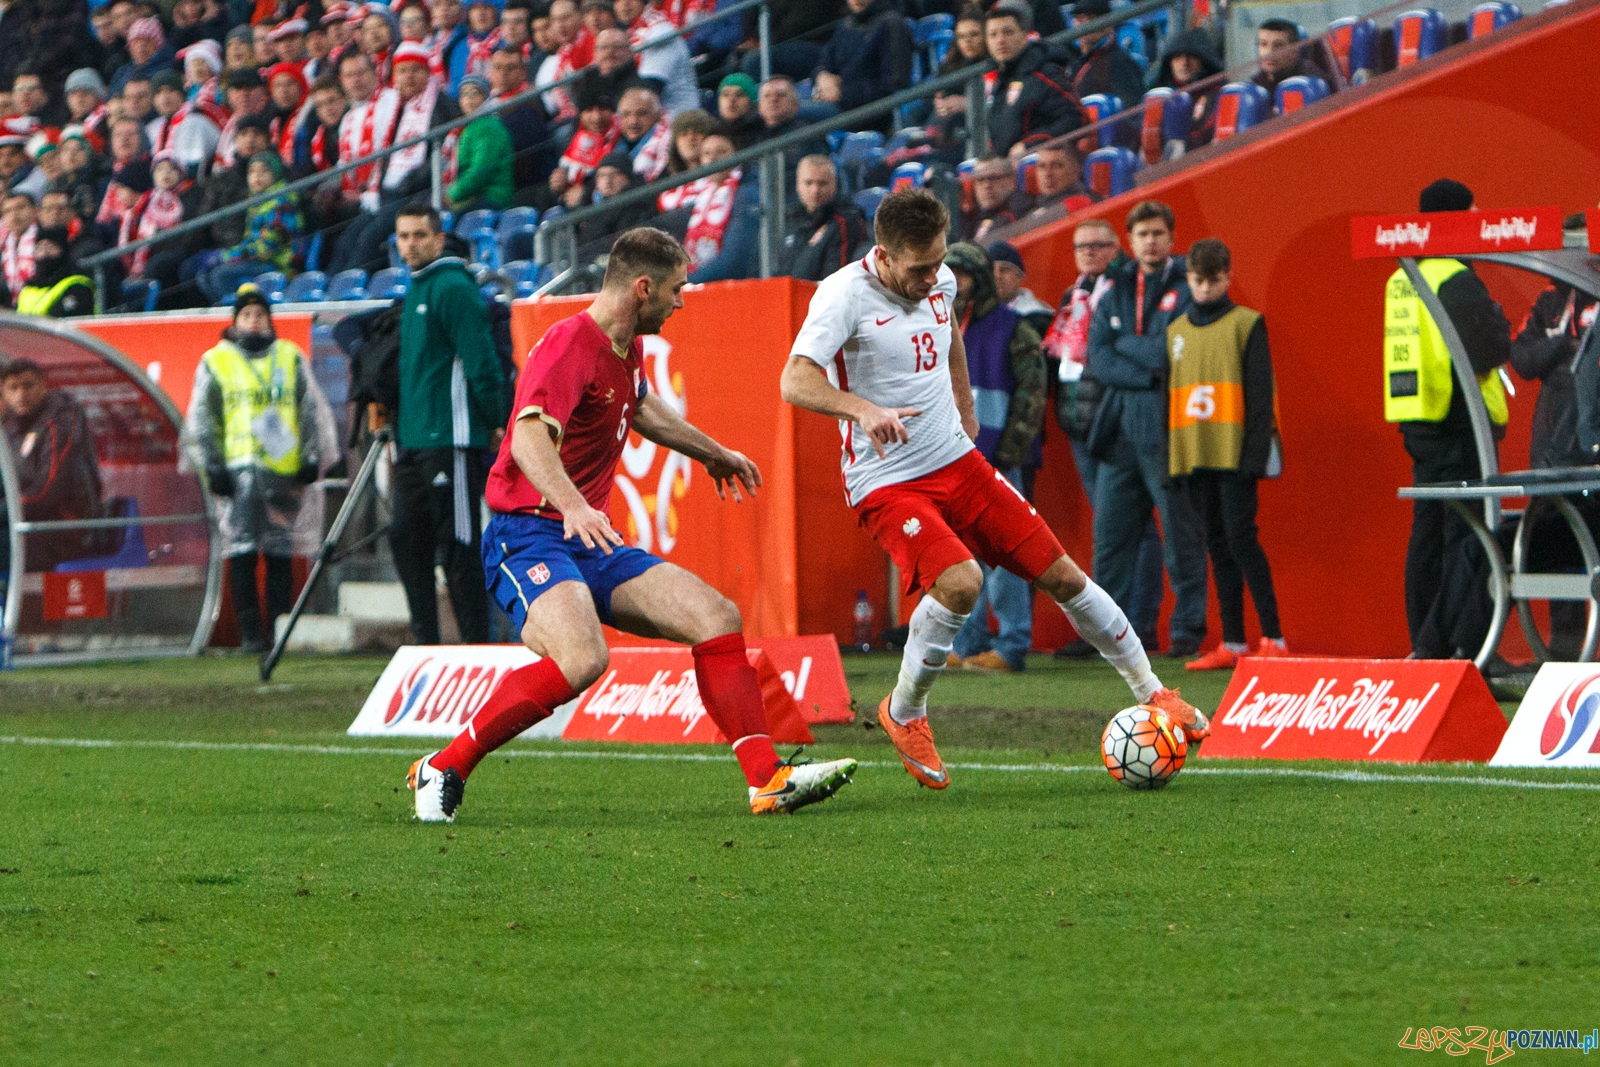 Mecz towarzyski: Polska - Serbia 1:0 - Poznań 23.03.2016 r.  Foto: LepszyPOZNAN.pl / Paweł Rychter